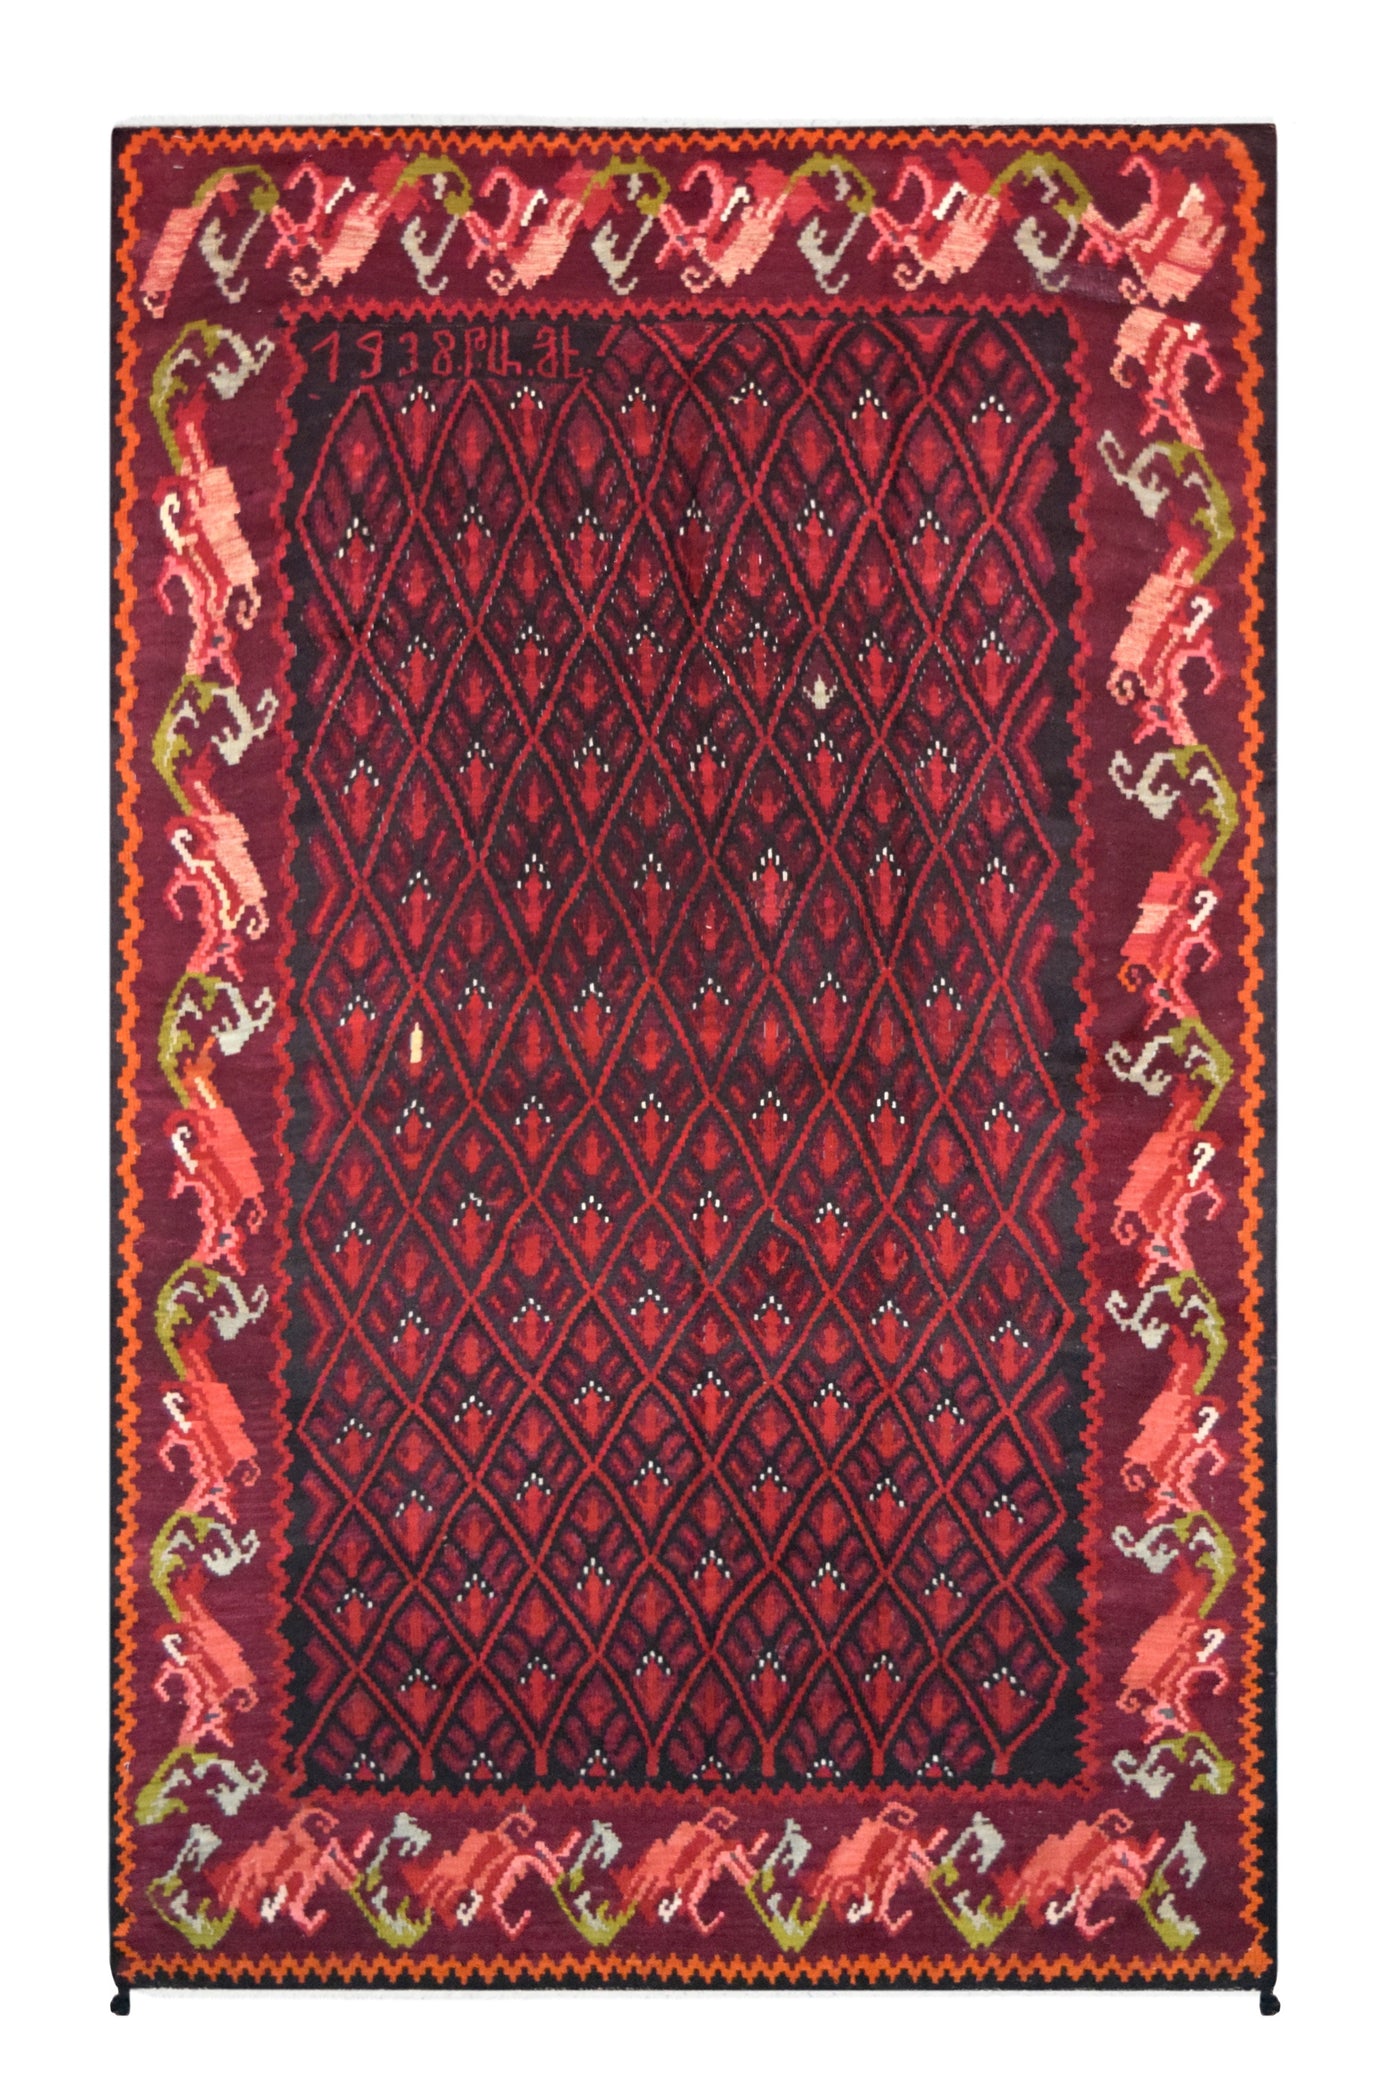 Armenian Kilim rug